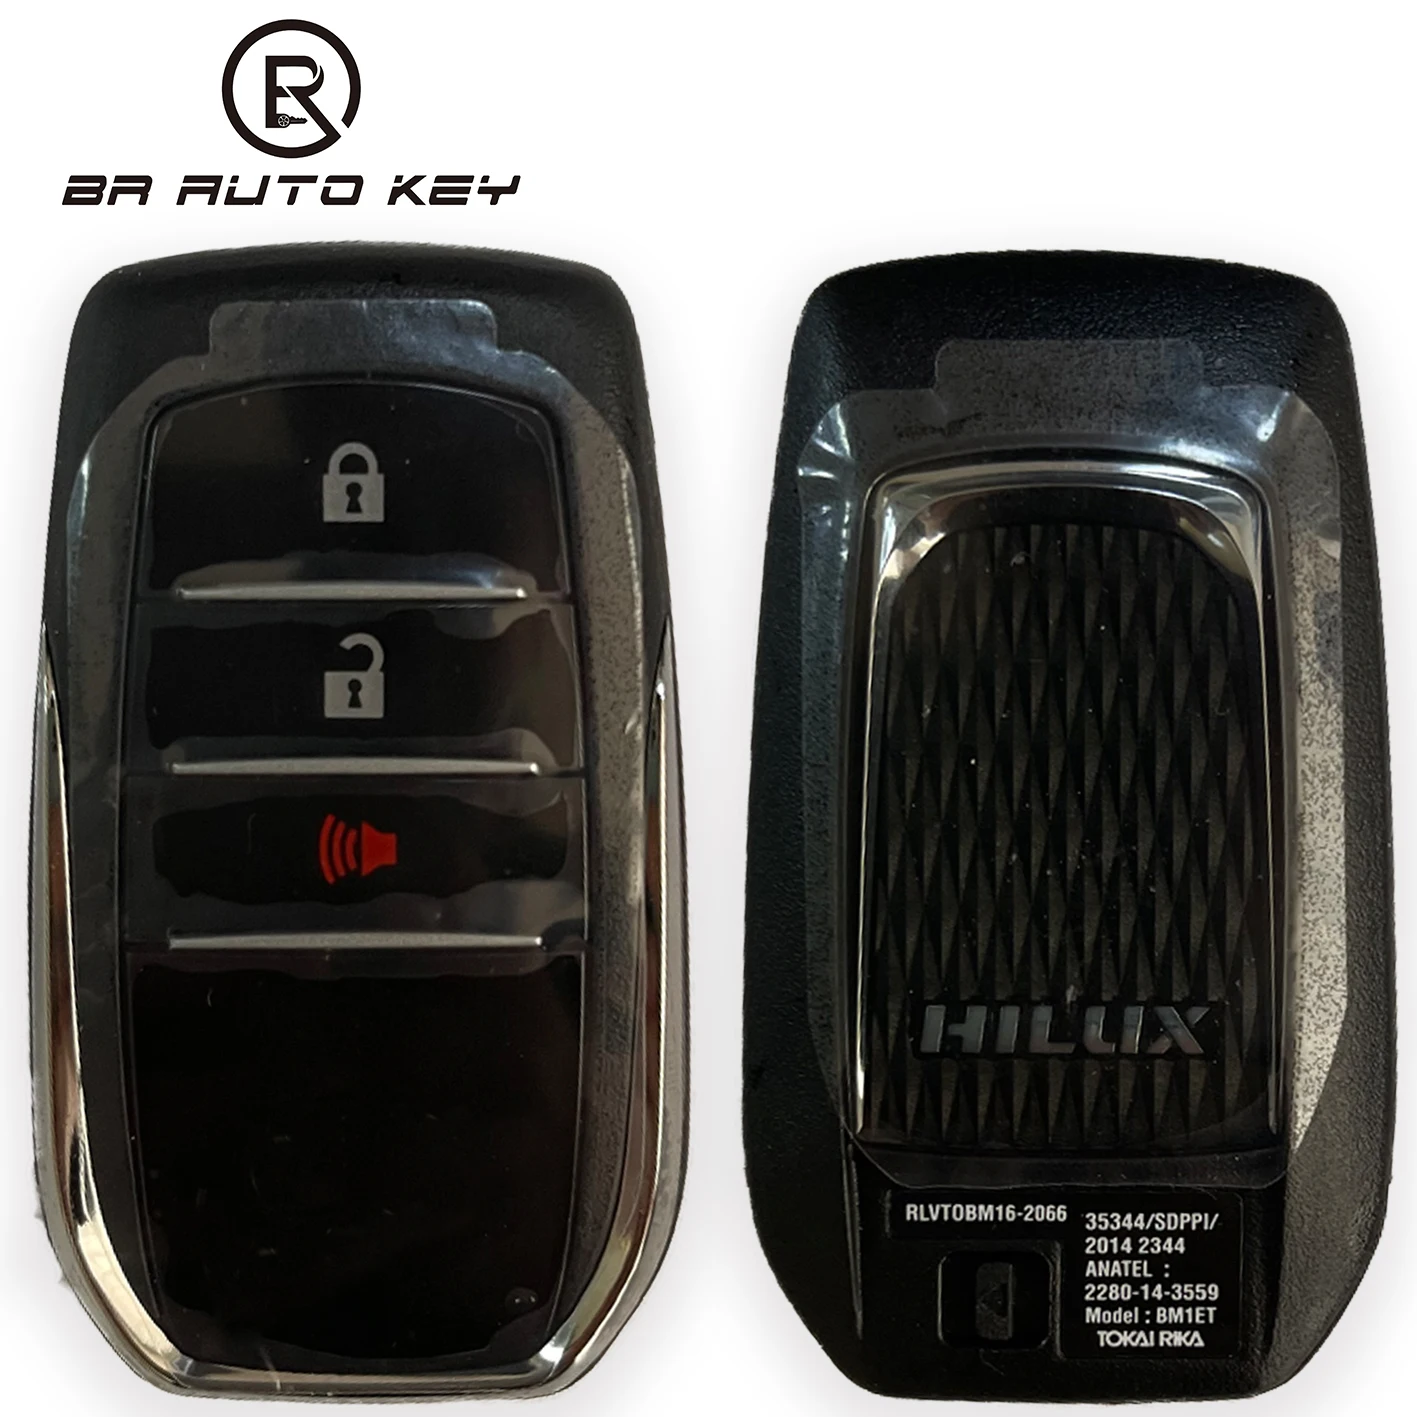 Oem 3 Кнопки Smart Remote Key Fob Для Toyota Hilux SRV 4X4 2014-2018 Интеллектуальный ключ Подлинный 312/314 МГц 433 МГц ID H BM1EW BM1ET